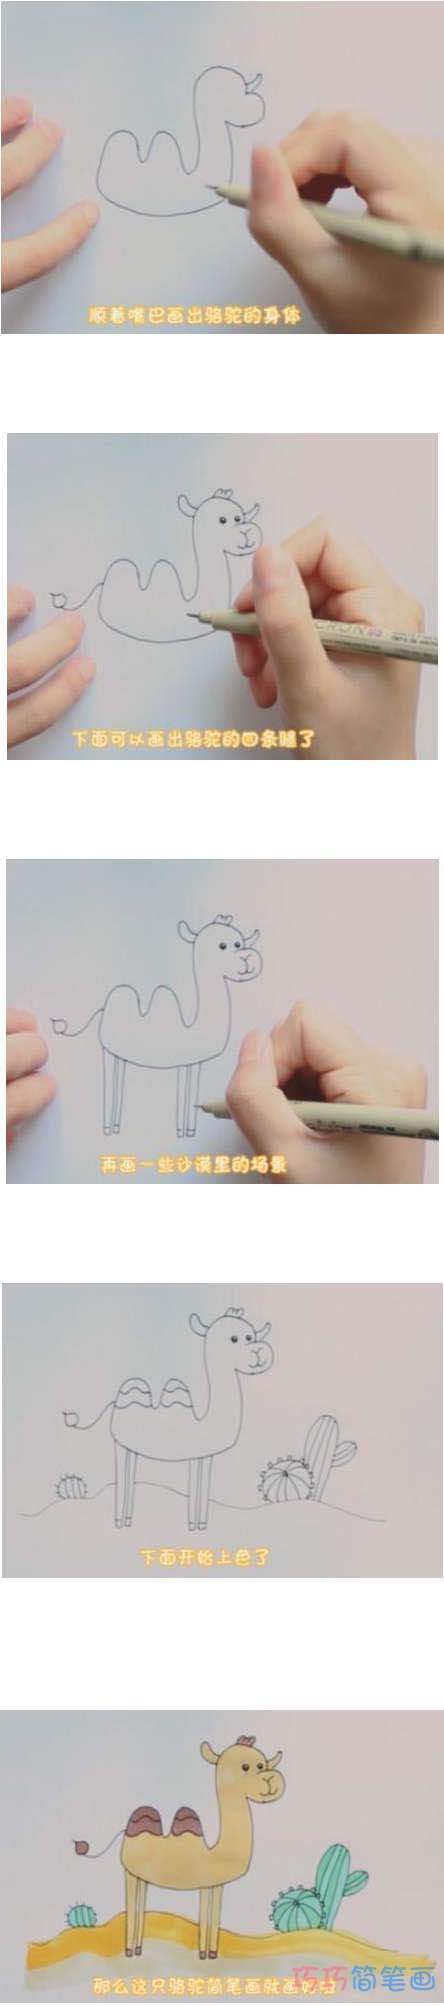 教你如何画骆驼简笔画步骤教程涂颜色